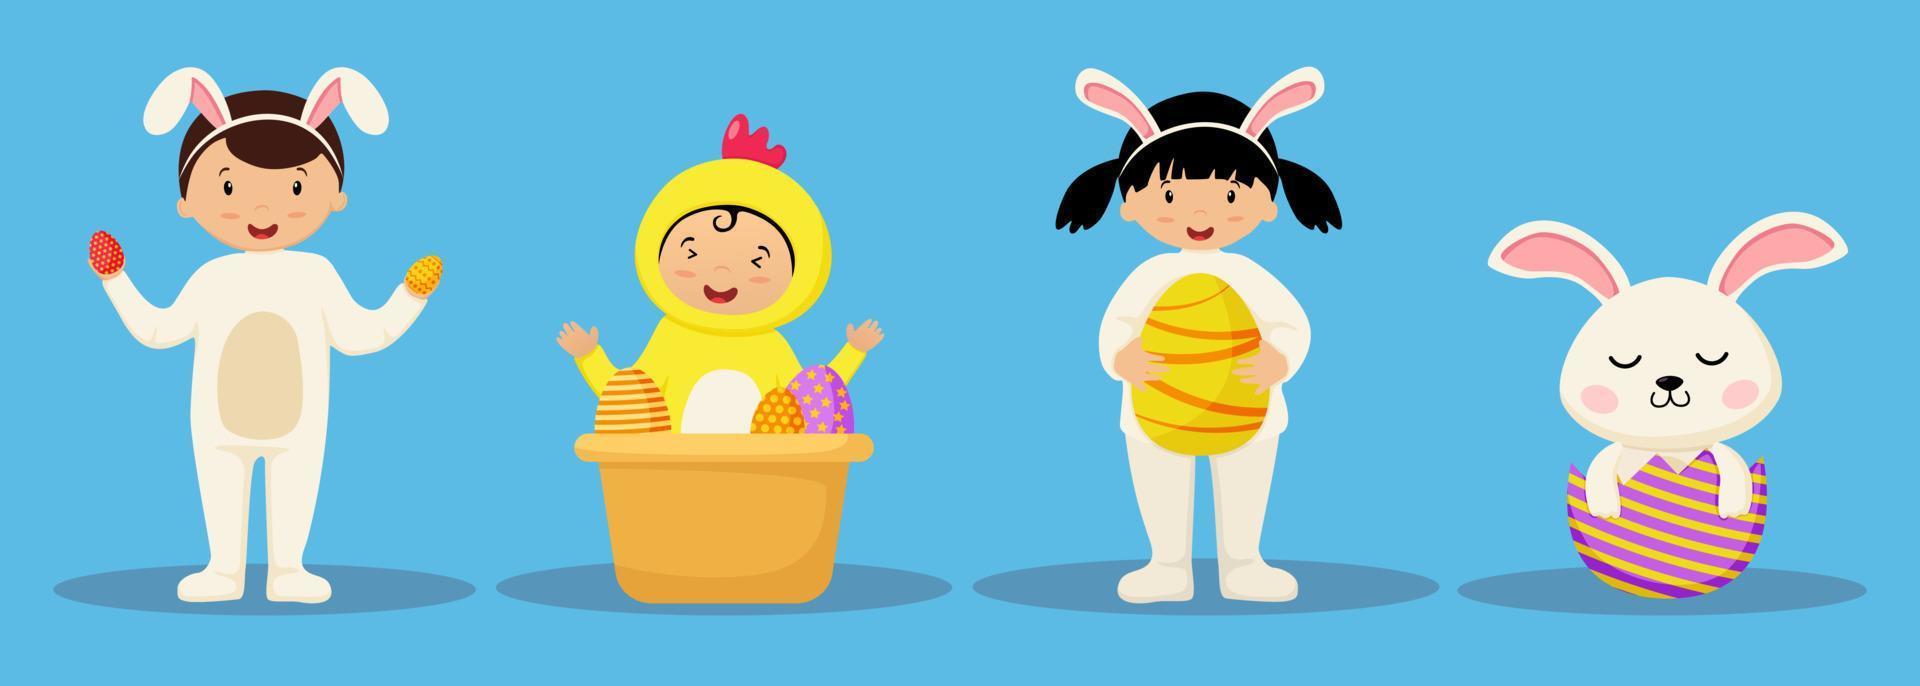 contento Pascua de Resurrección linda dibujos animados personaje vector colocar.